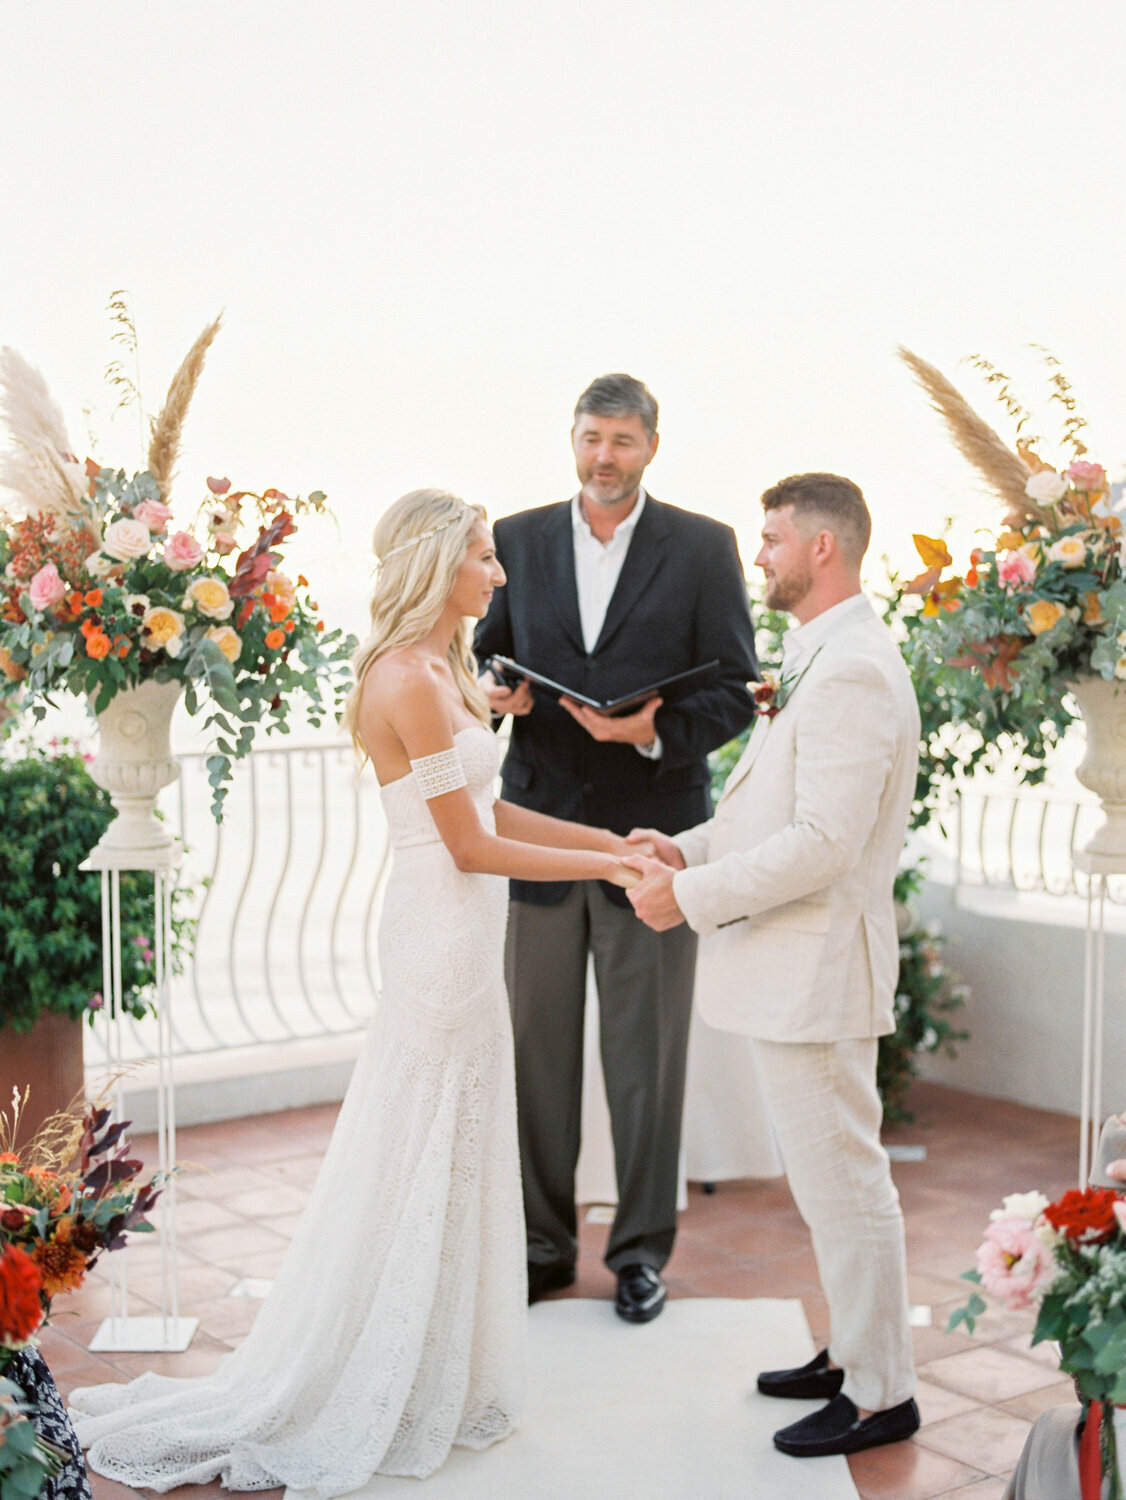 Wedding Ceremony at Hotel Marincanto Positano